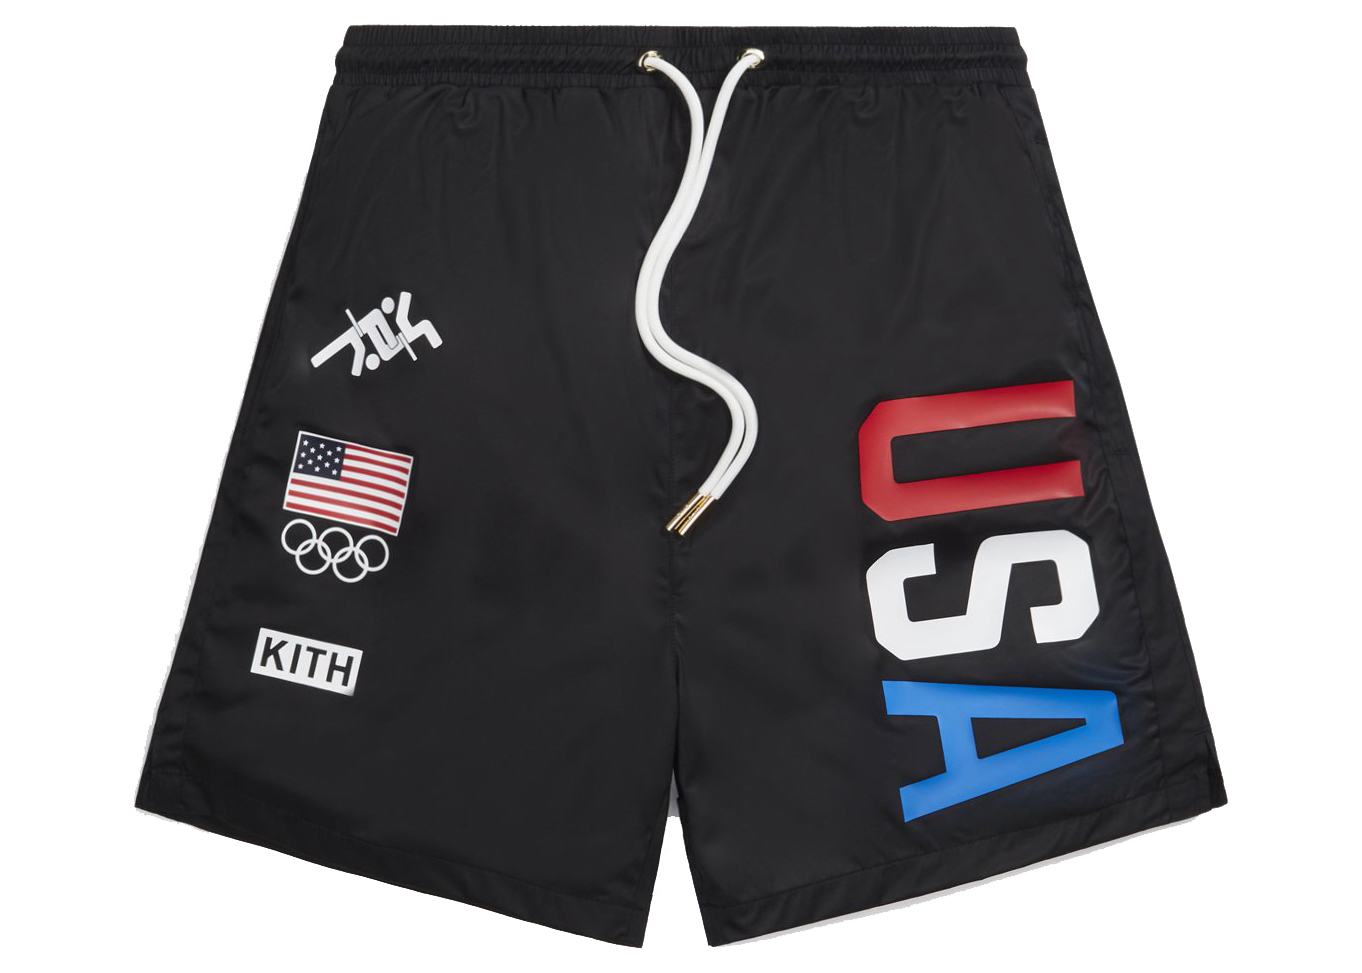 Kith for Team USA Ring Swim Shorts Black Men's - SS21 - US